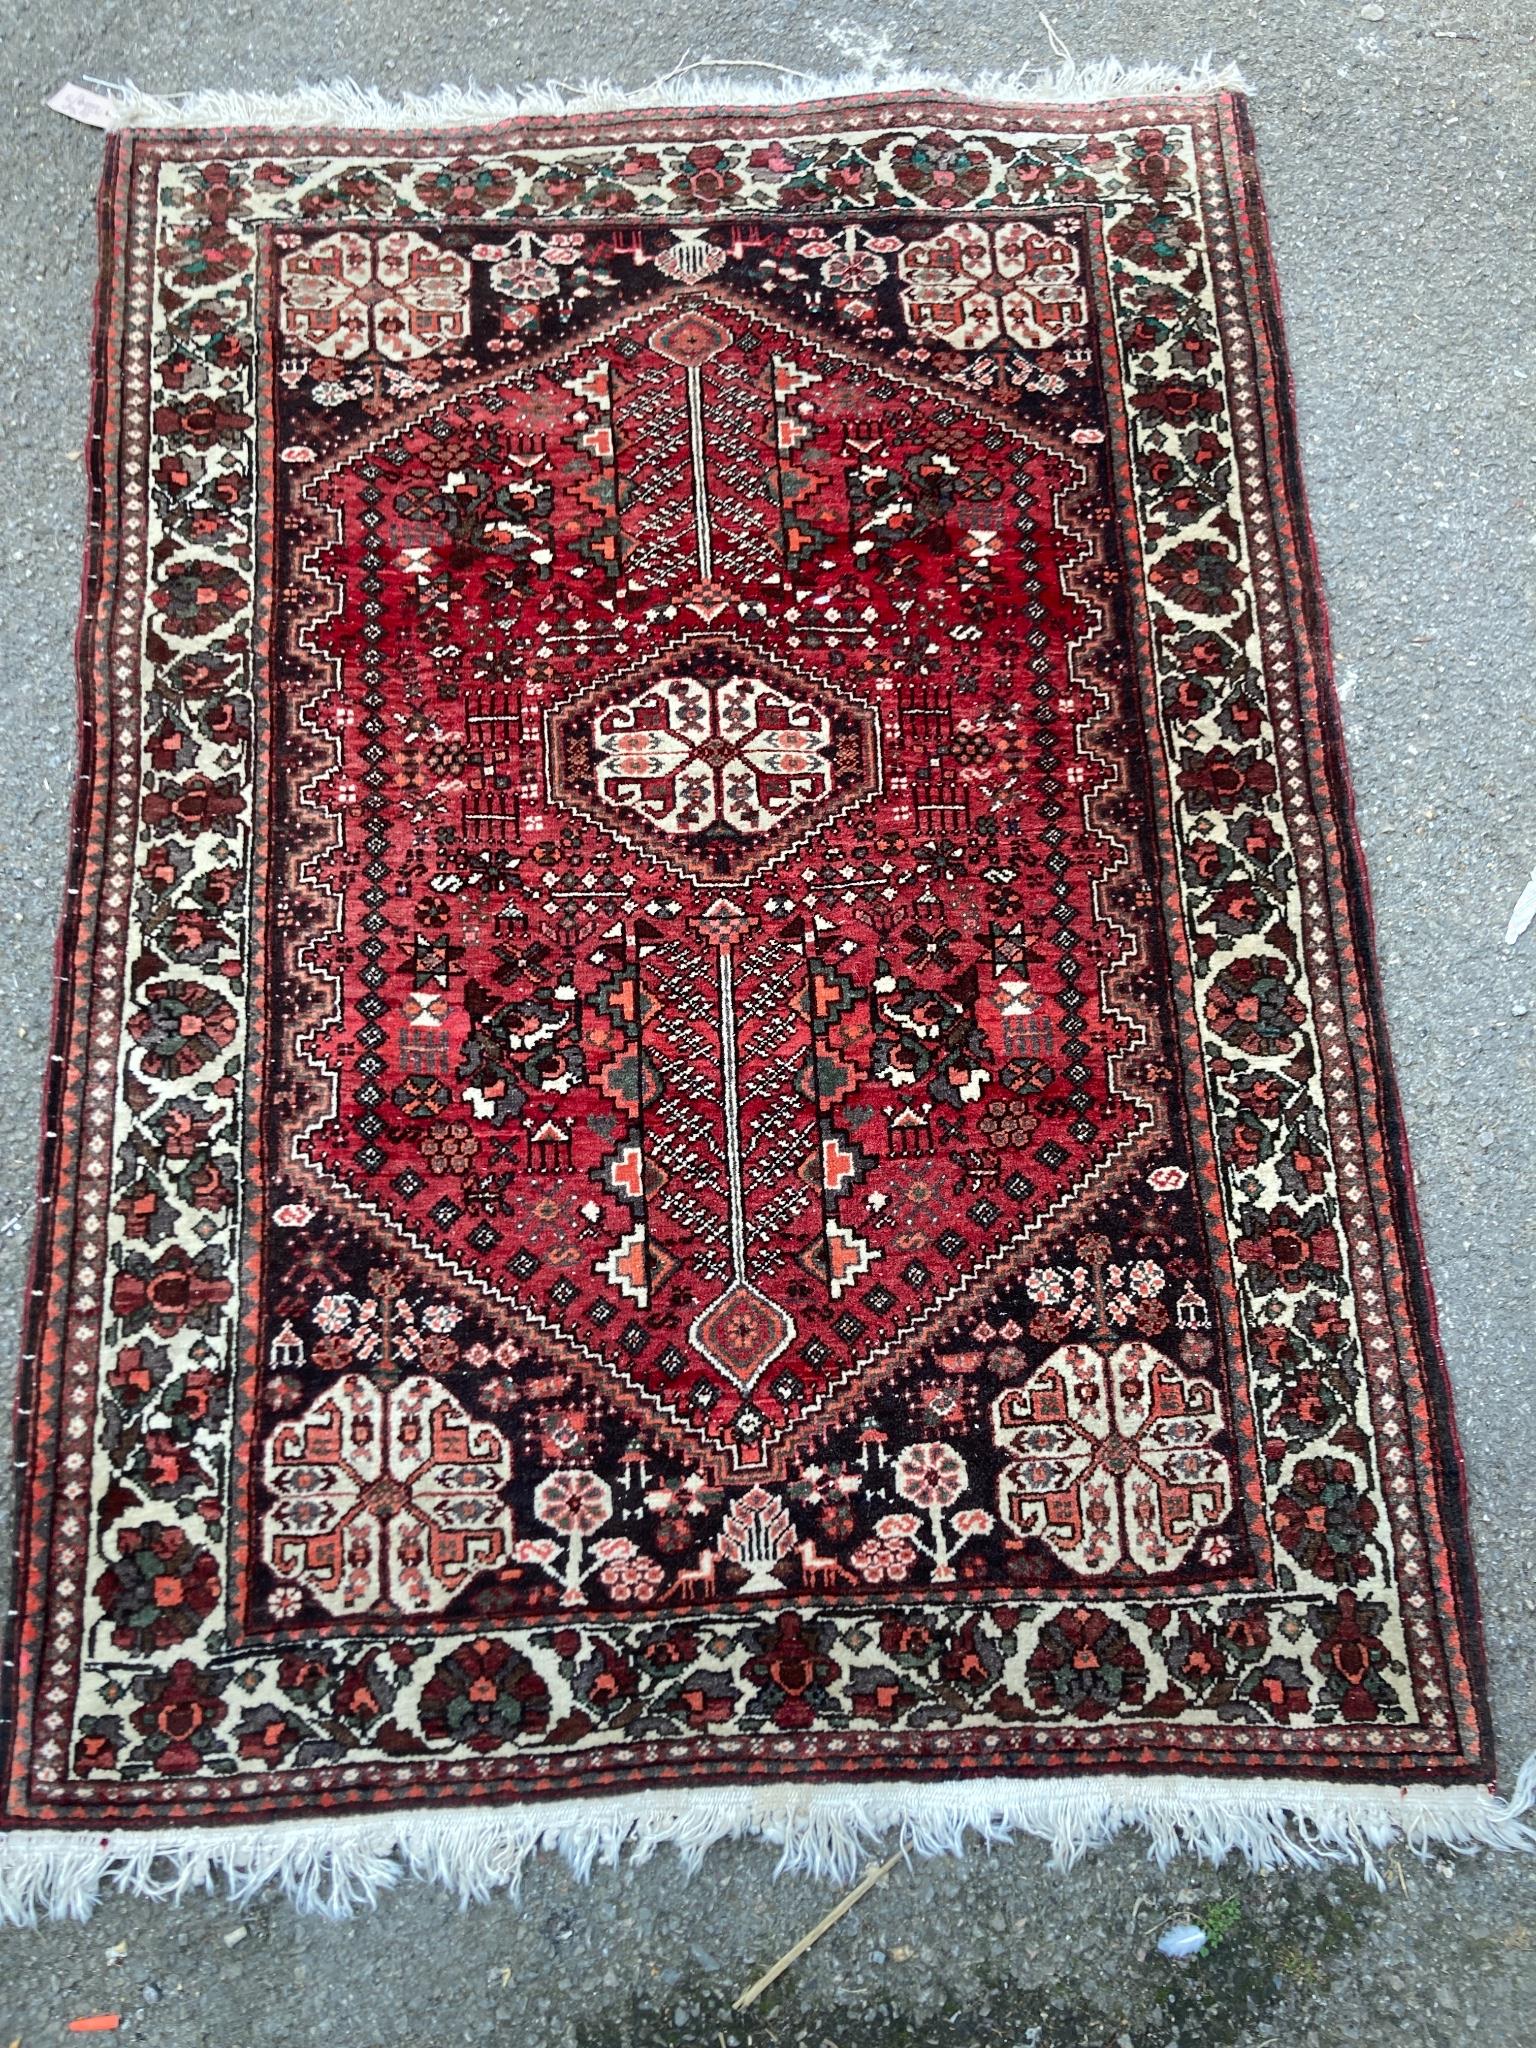 A Belouch red ground rug, 148 x 108cm